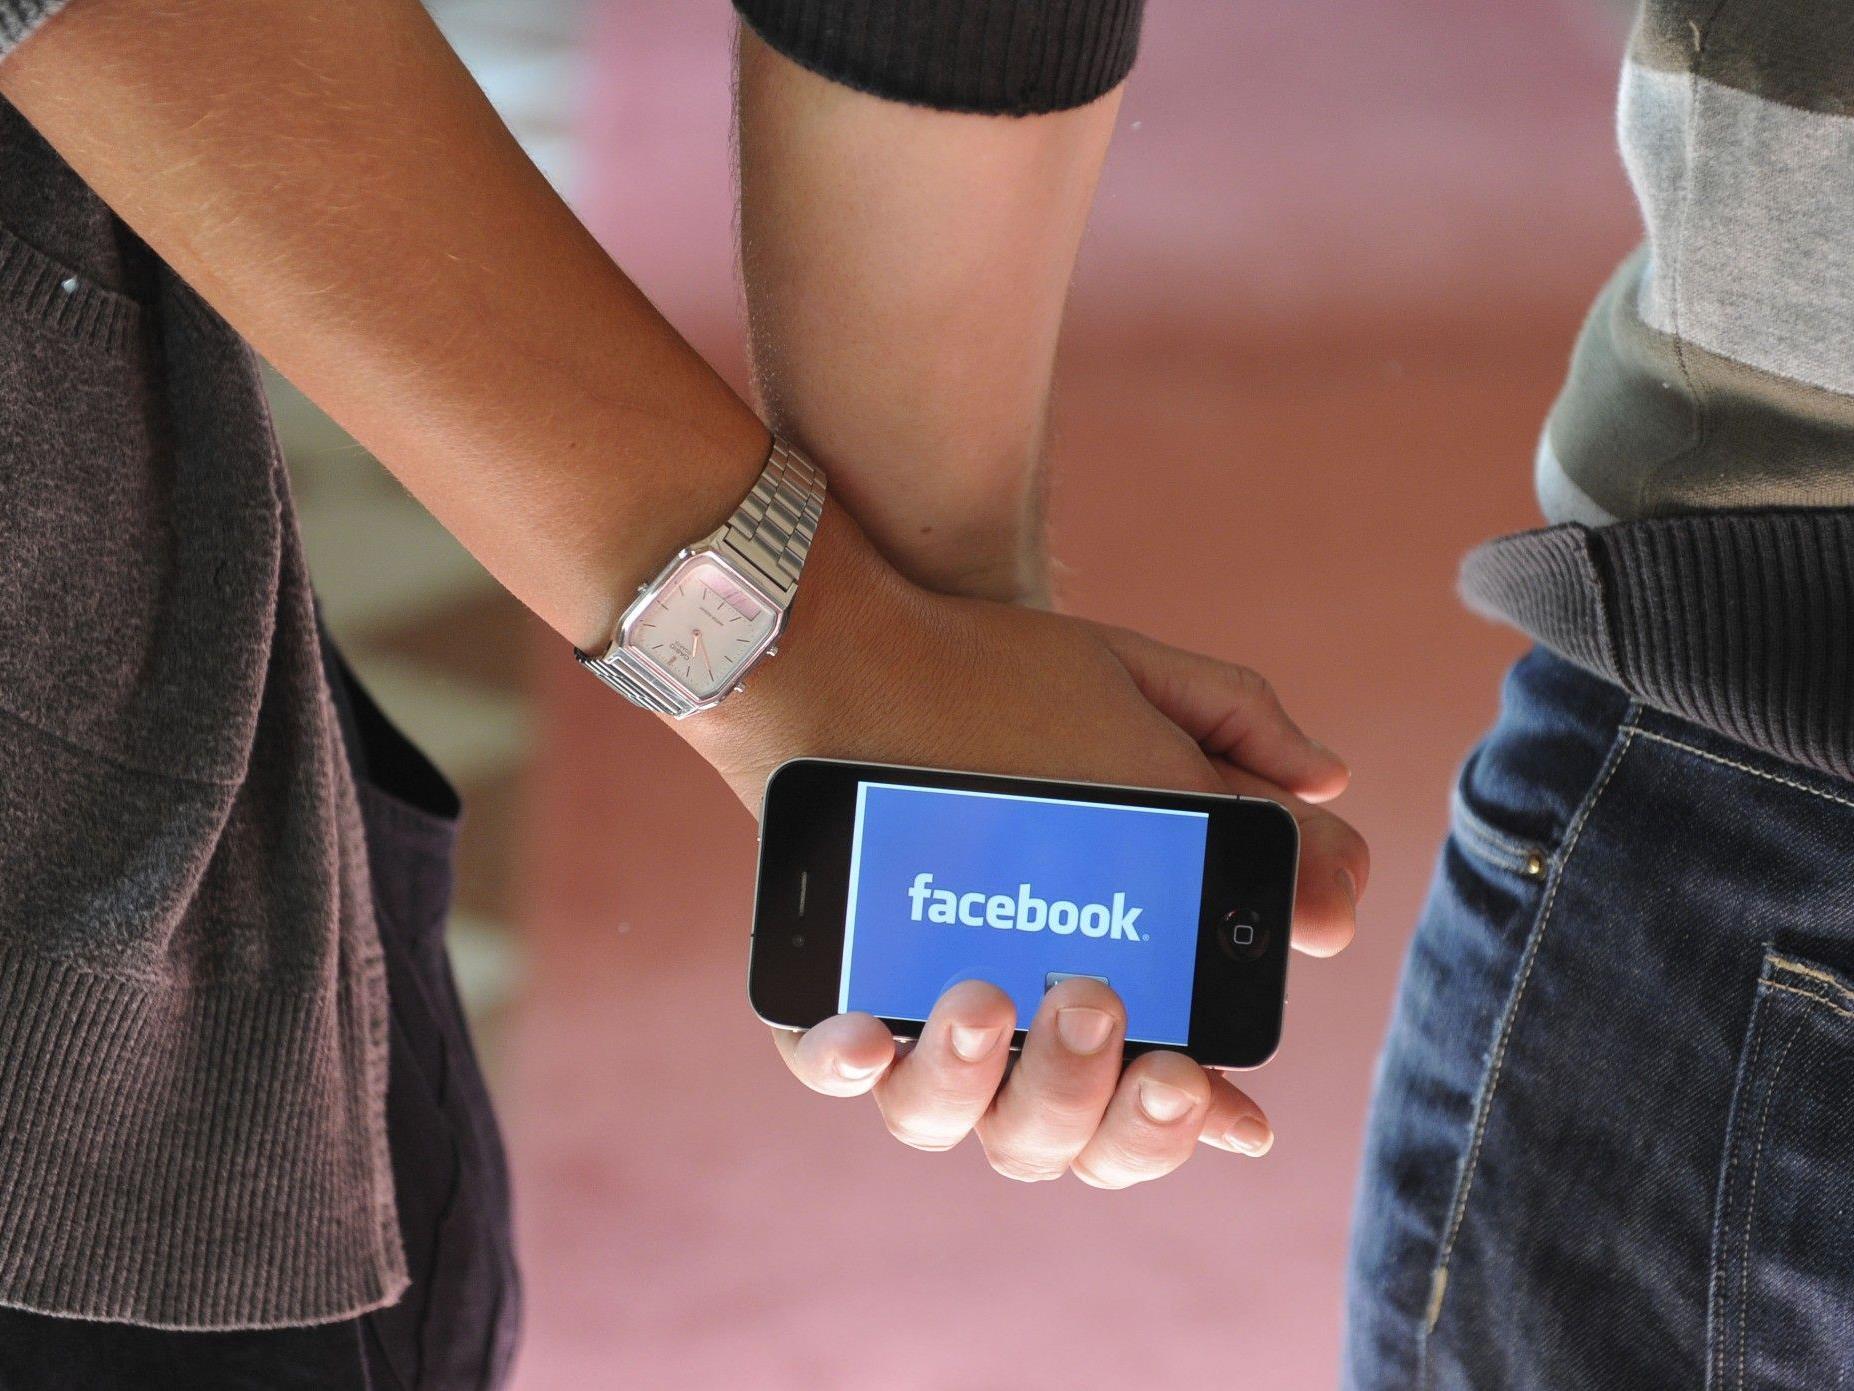 Facebook: Allein im Juni meldeten sich 102 Mio. Nutzer ausschließlich mit mobilen Geräten an.